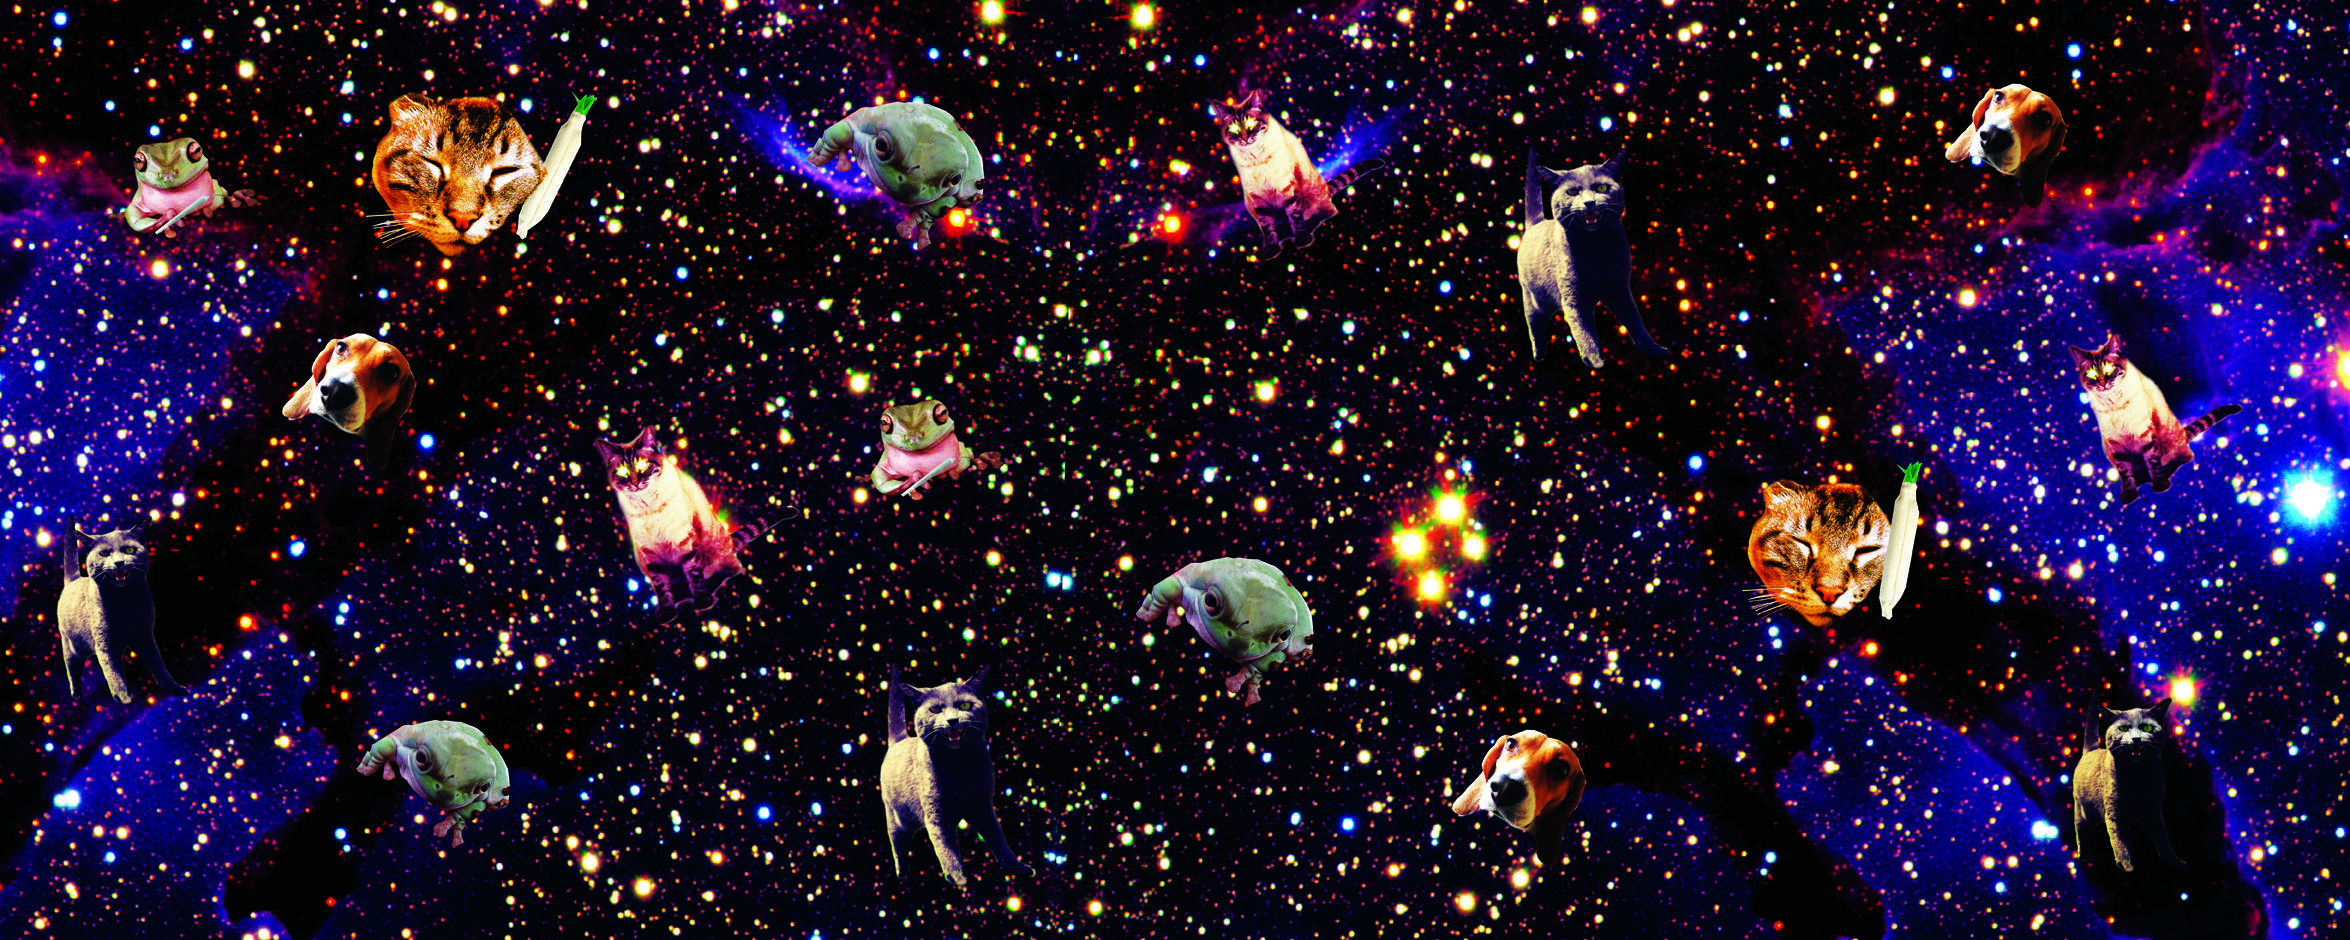 2350x940 Tải xuống miễn phí mèo con trong không gian hình nền đồ họa mèo Footprint Insole [2350x940] cho Máy tính để bàn, Di động & Máy tính bảng của bạn.  Khám phá Hình nền Kitty Space.  Space Cats Wallpaper HD, Space Desktop Wallpaper HD